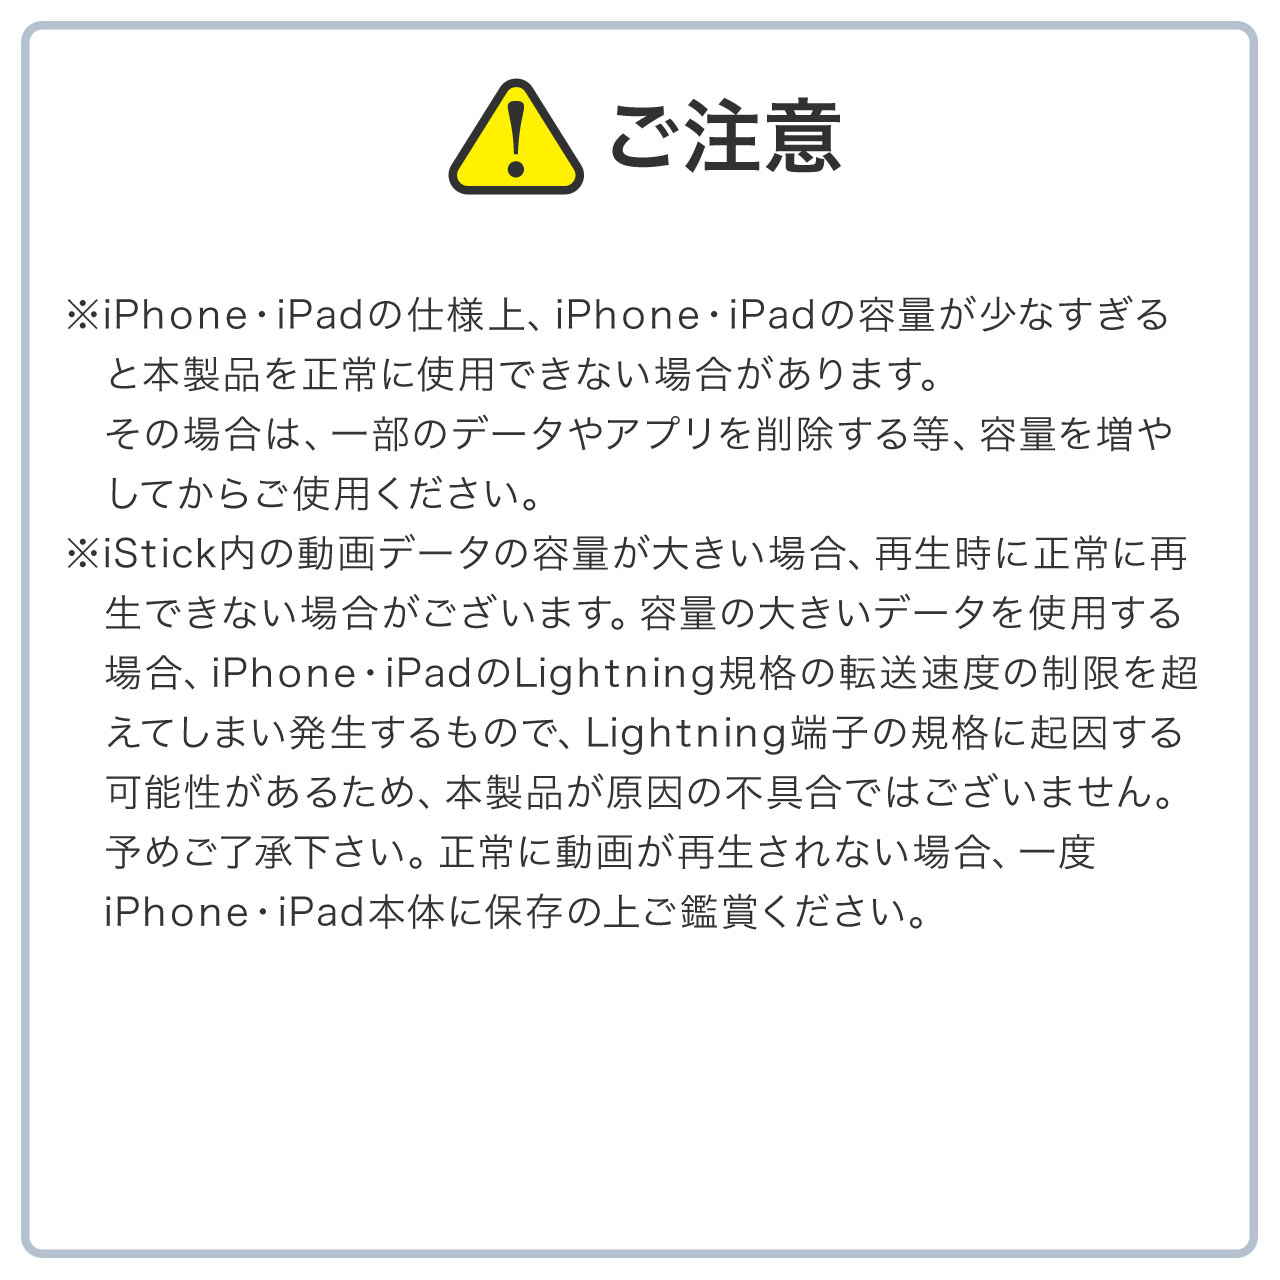 iPhoneEiPad USB 128GBiUSB3.1 Gen1ELightningΉEMFiF؁EiStickPro 3.0EVo[j 600-IPL128GAS